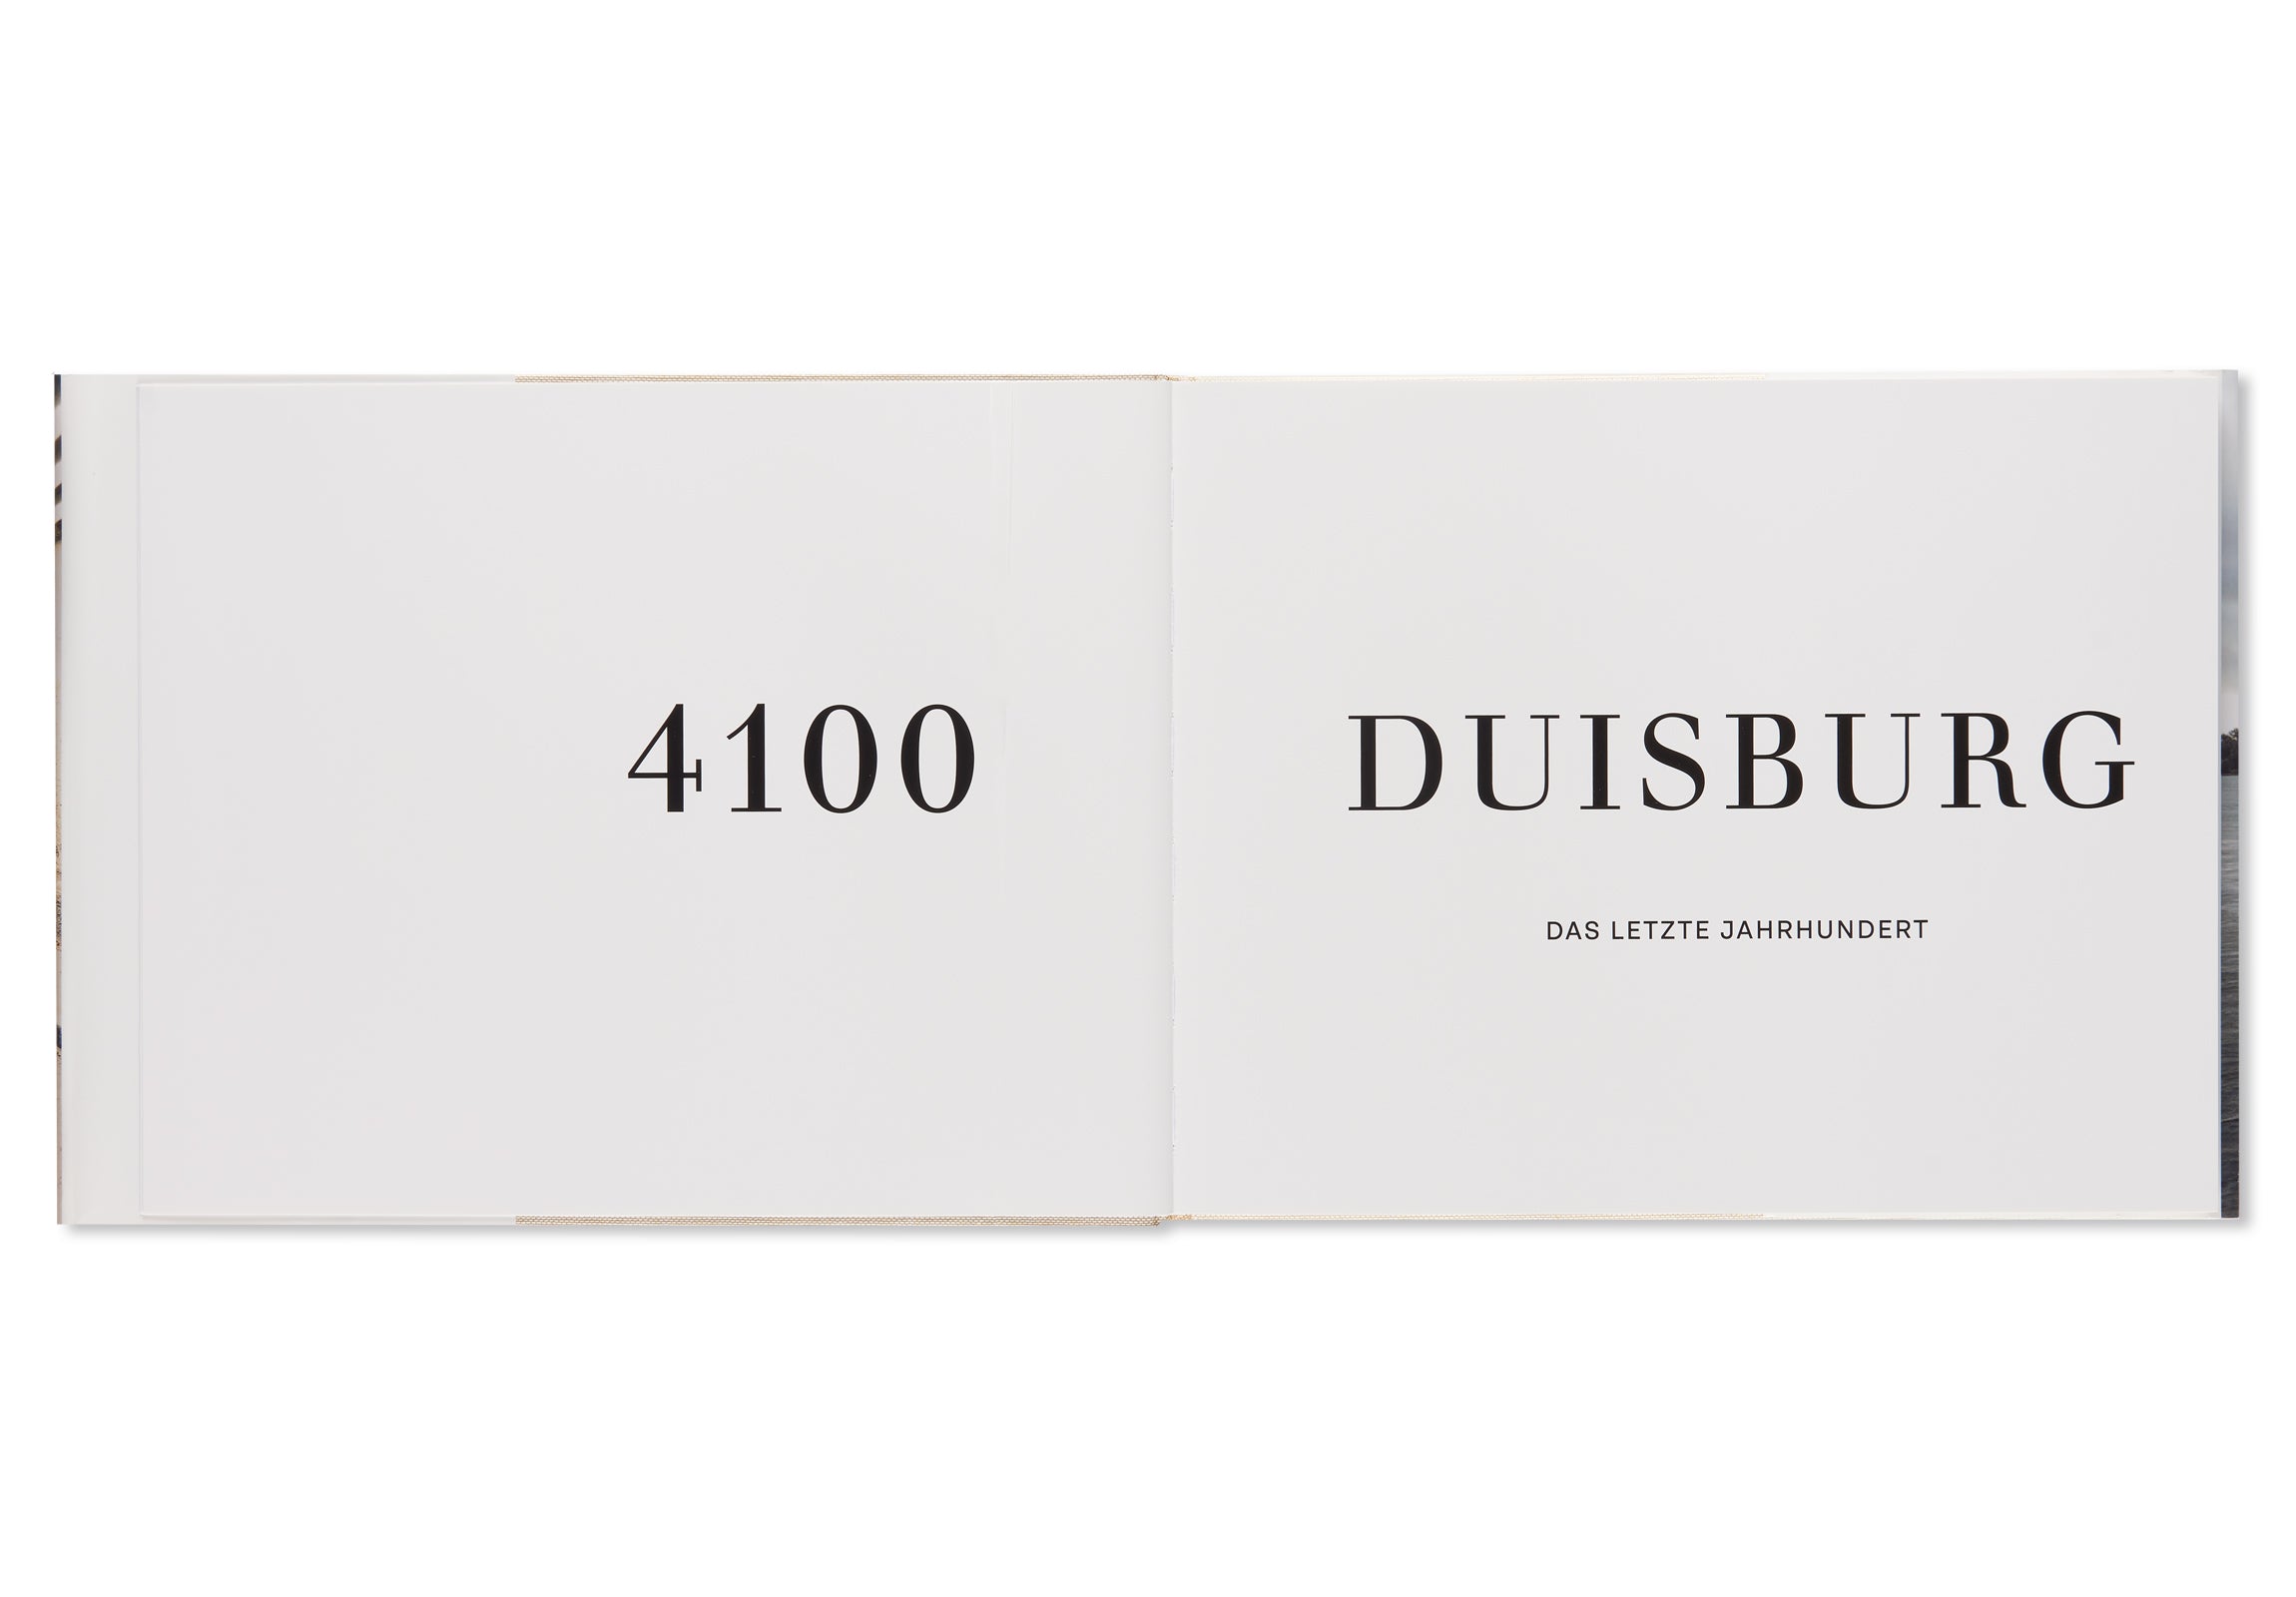 4100 DUISBURG - DAS LETZTE JAHRHUNDERT / THE LAST CENTURY by Laurenz Berges